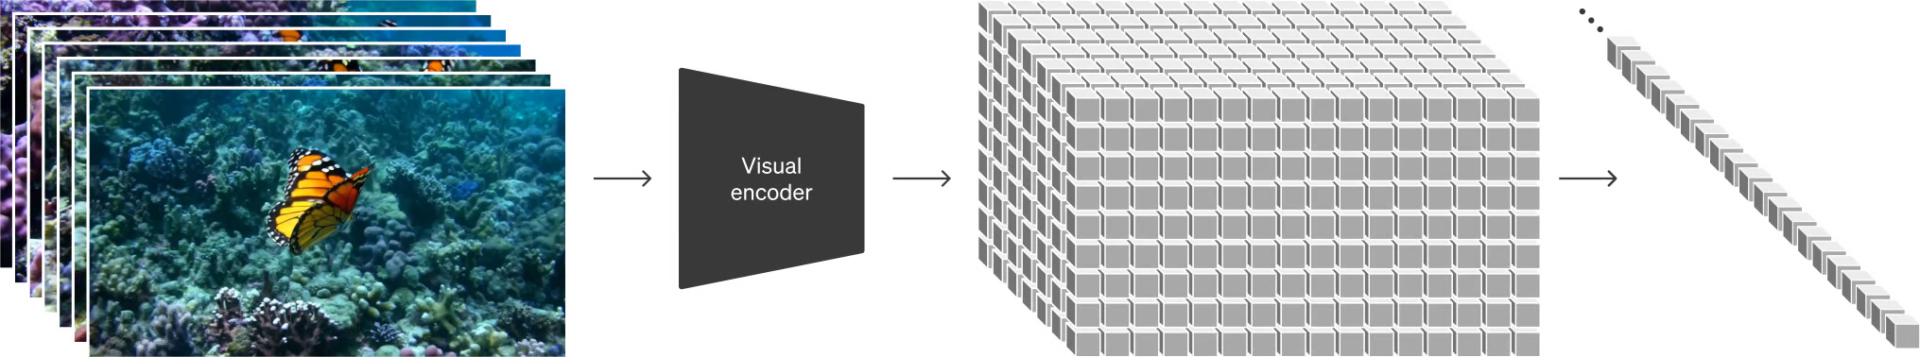 OpenAIによる、ビジュアルデータのパッチ化の説明画像。